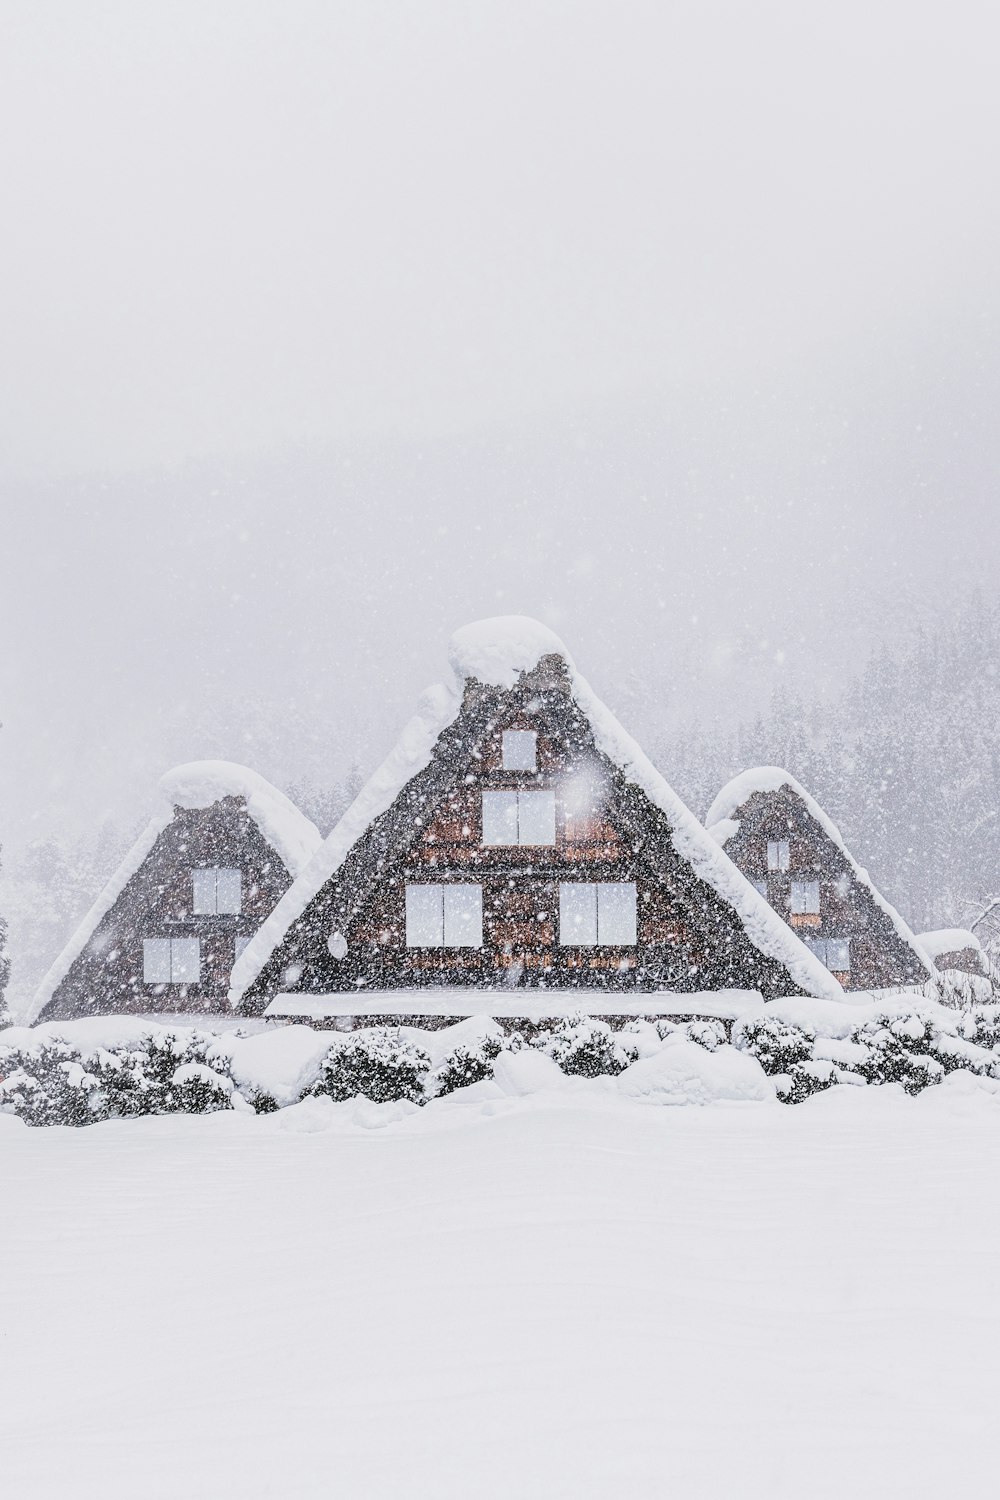 Ein schneebedecktes Haus mit Bäumen im Hintergrund